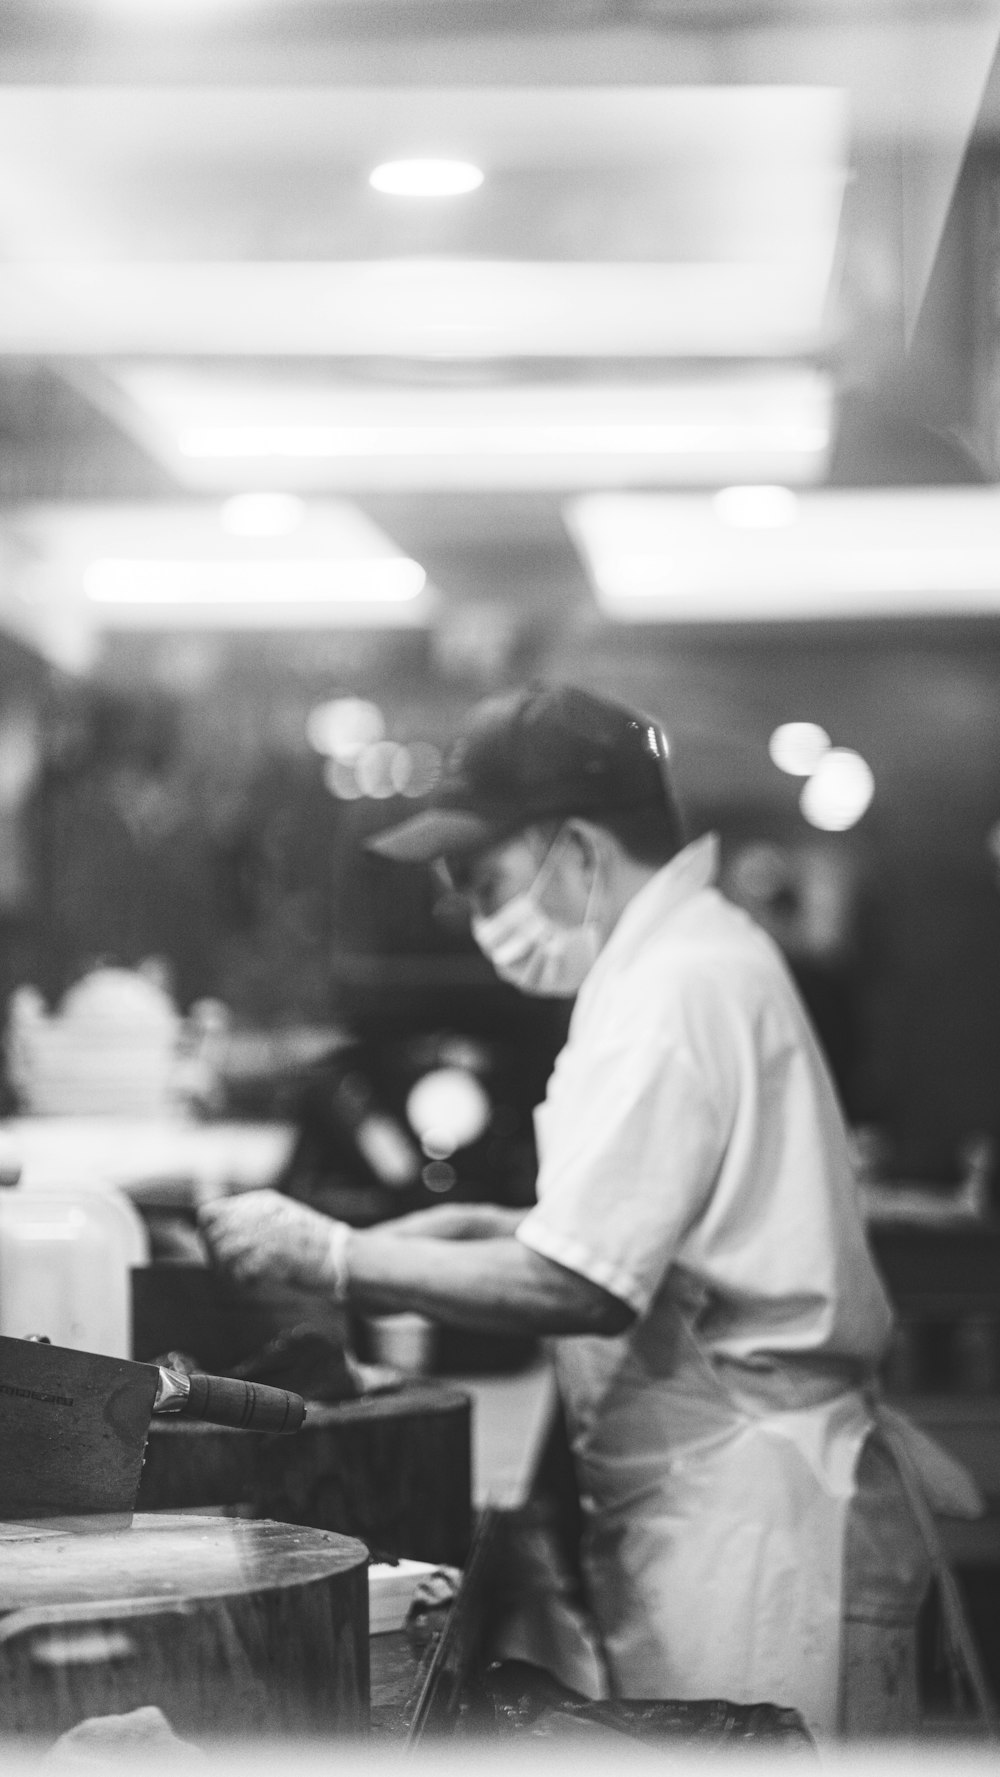 Una foto in bianco e nero di un uomo che lavora in un ristorante